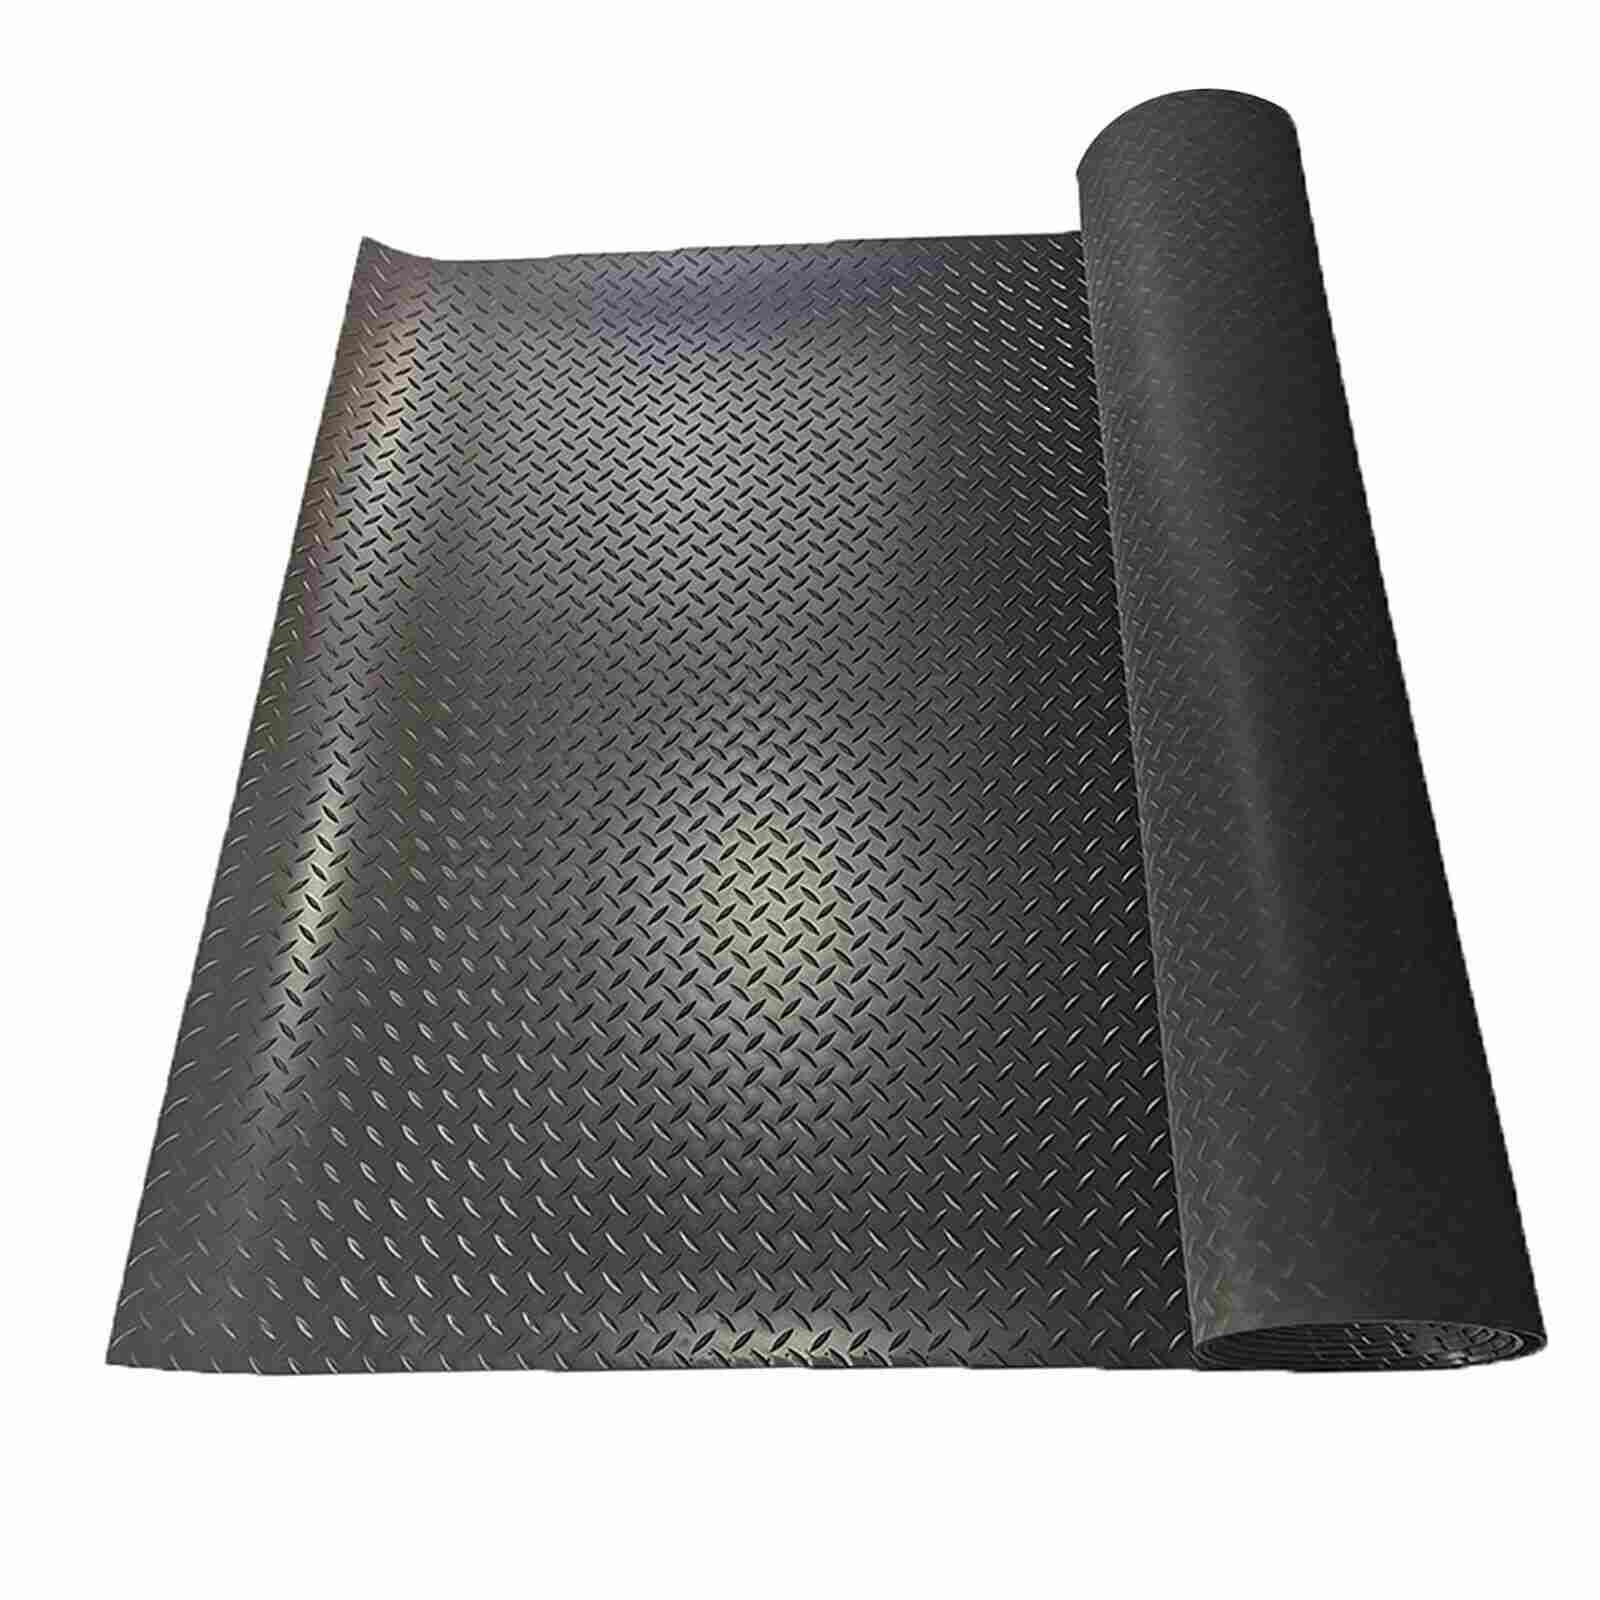 Black PVC Non-Slip Garage Floor Mat Roll